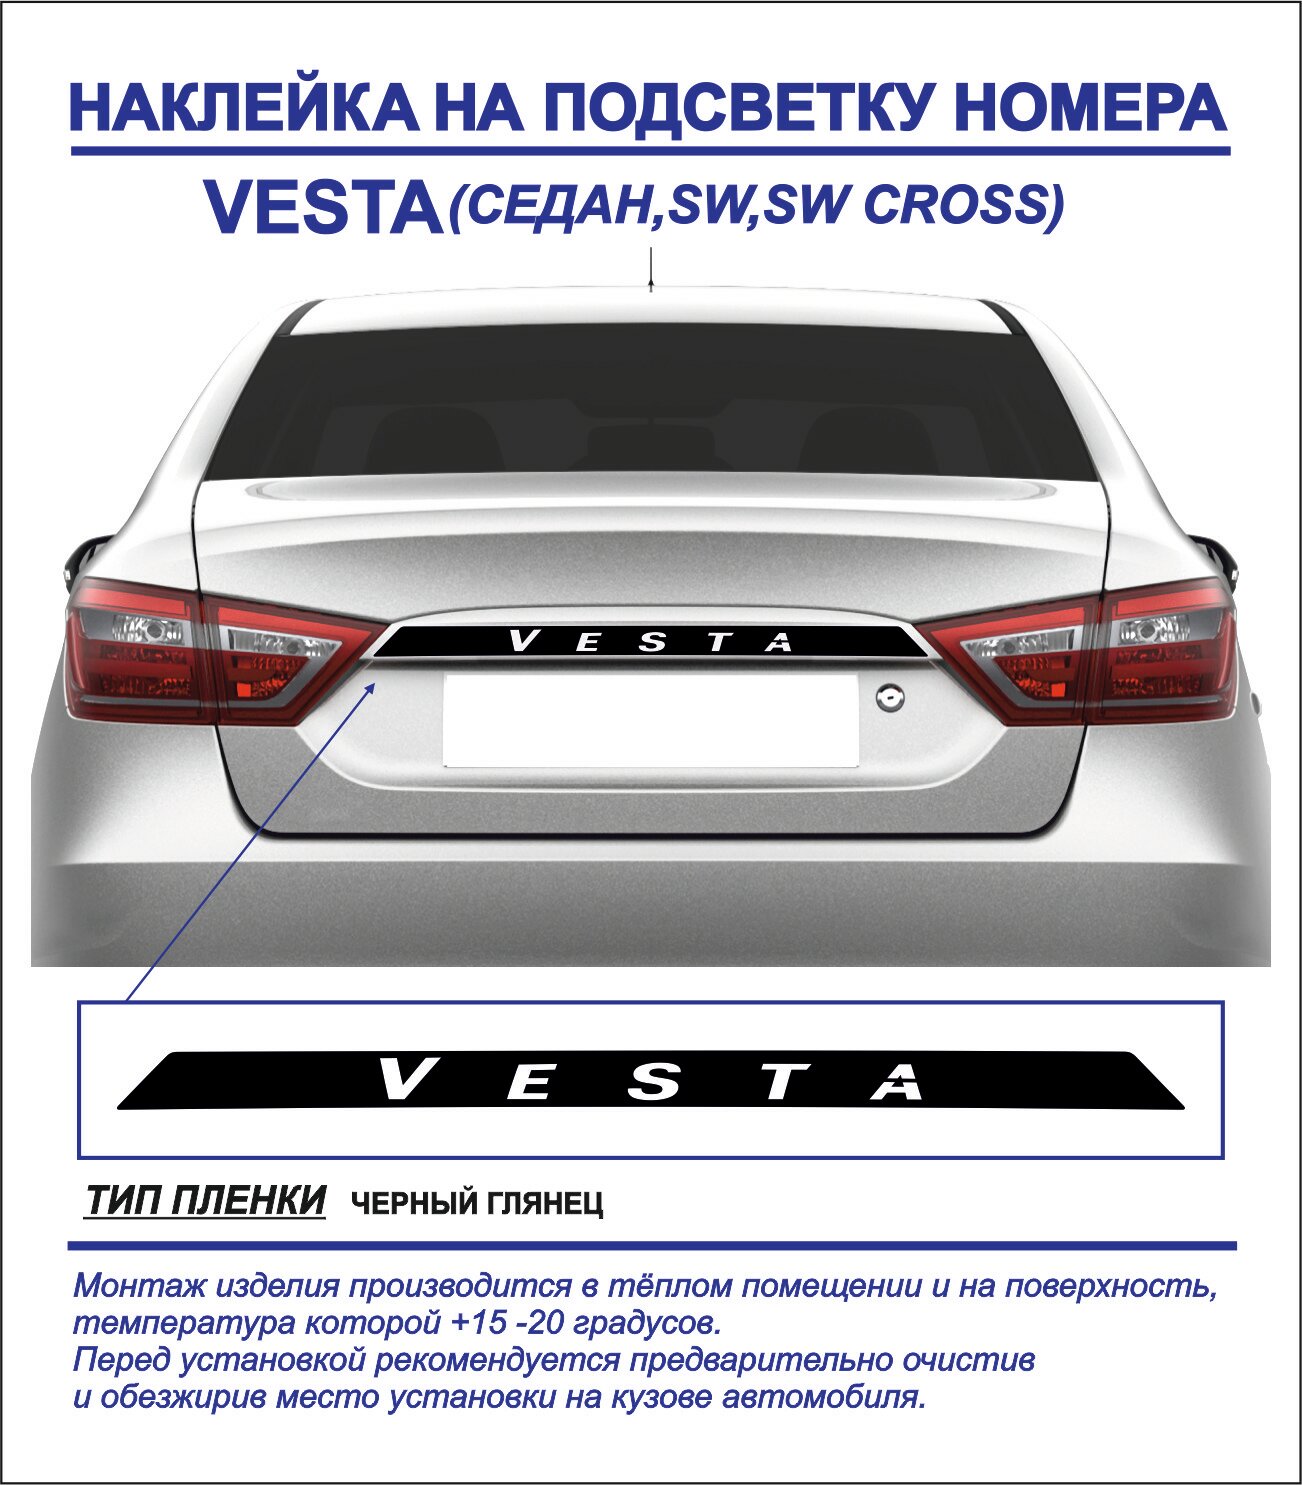 Наклейка тюнинг на подсветку номера Lada Vesta седан sw sw cross (черный глянец) 1шт.